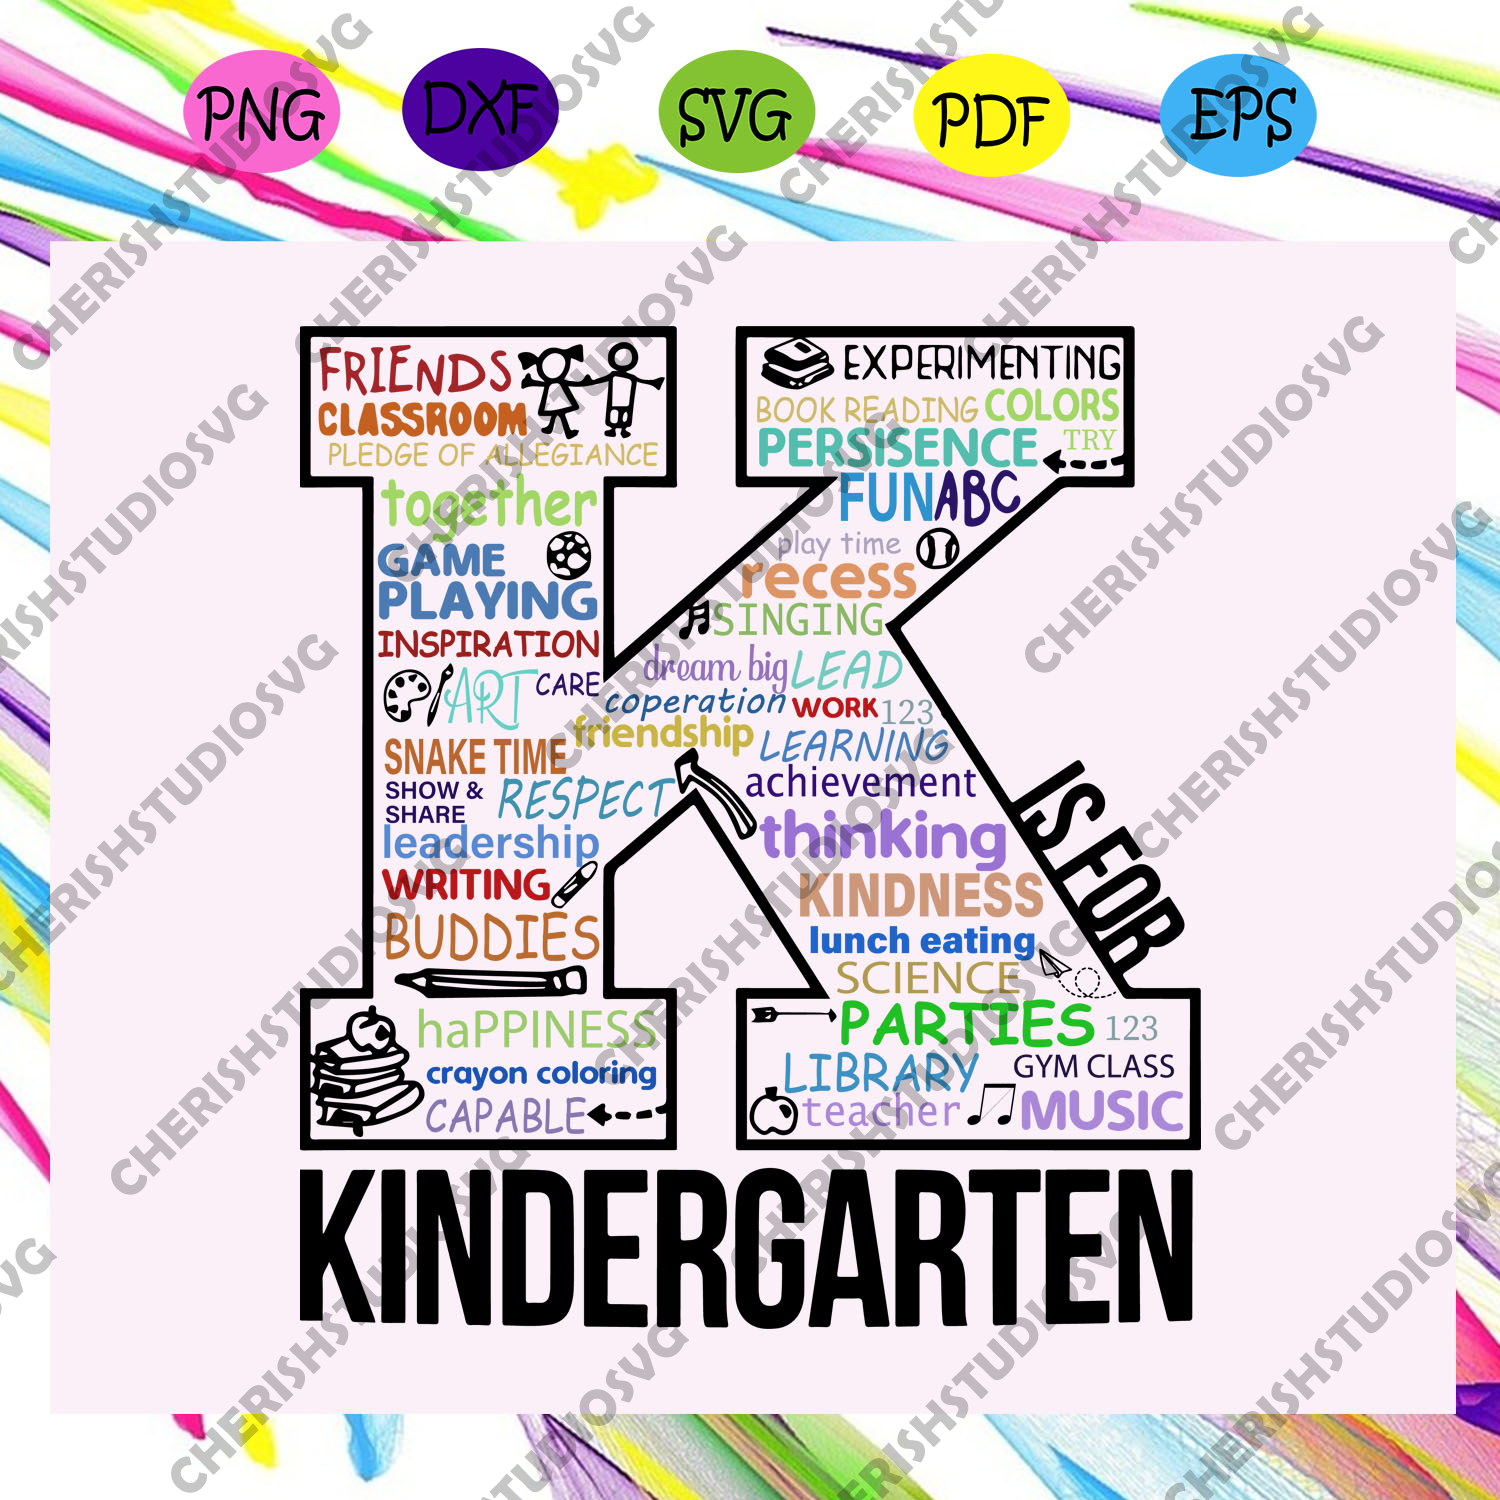 Free Free Kindergarten Graduate Svg 103 SVG PNG EPS DXF File